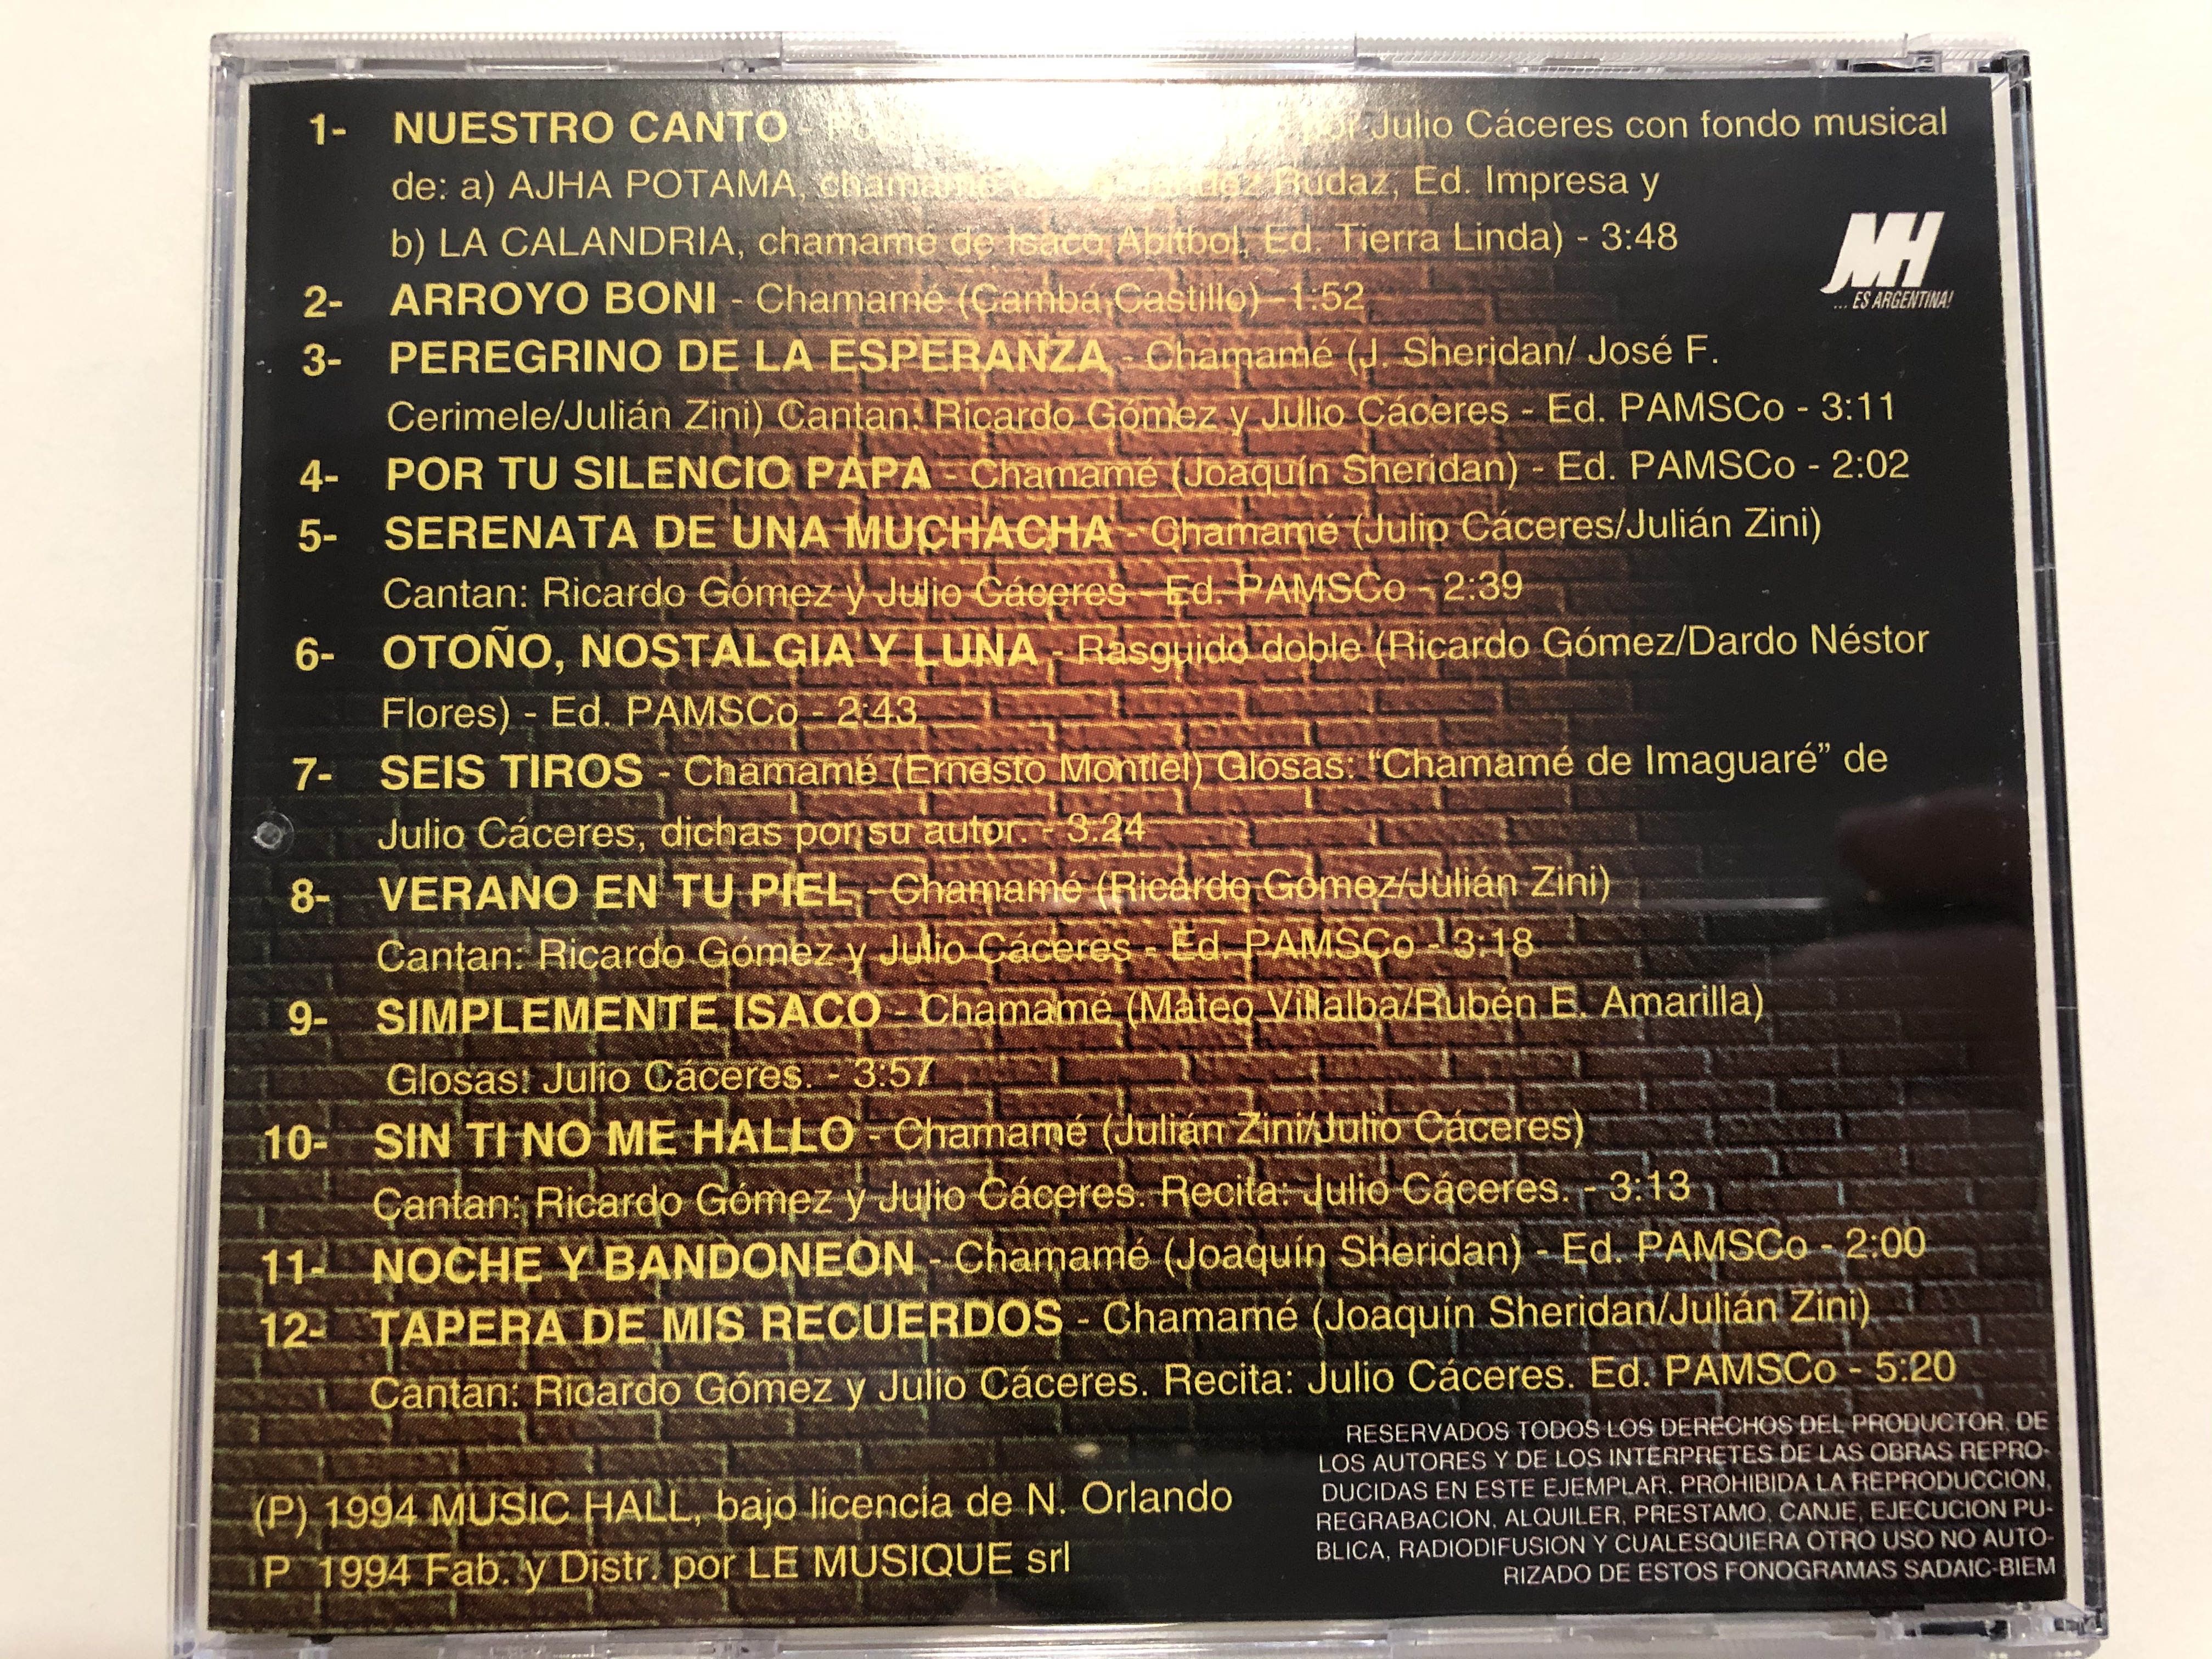 los-de-imaguare-nuestro-canto-music-hall-audio-cd-1994-236521-2-.jpg